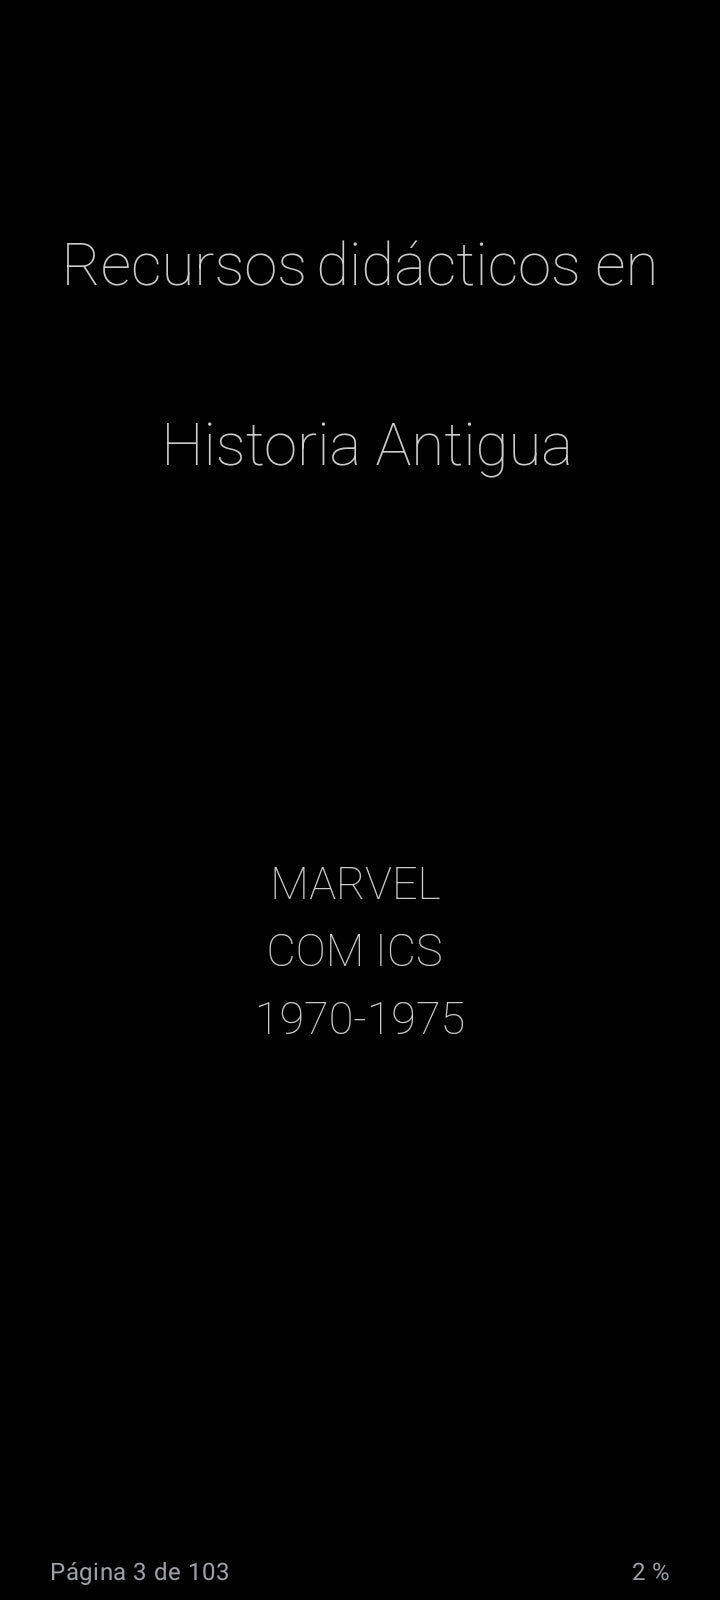 Recursos didácticos en Historia Antigua: Marvel Comics 1970-1975